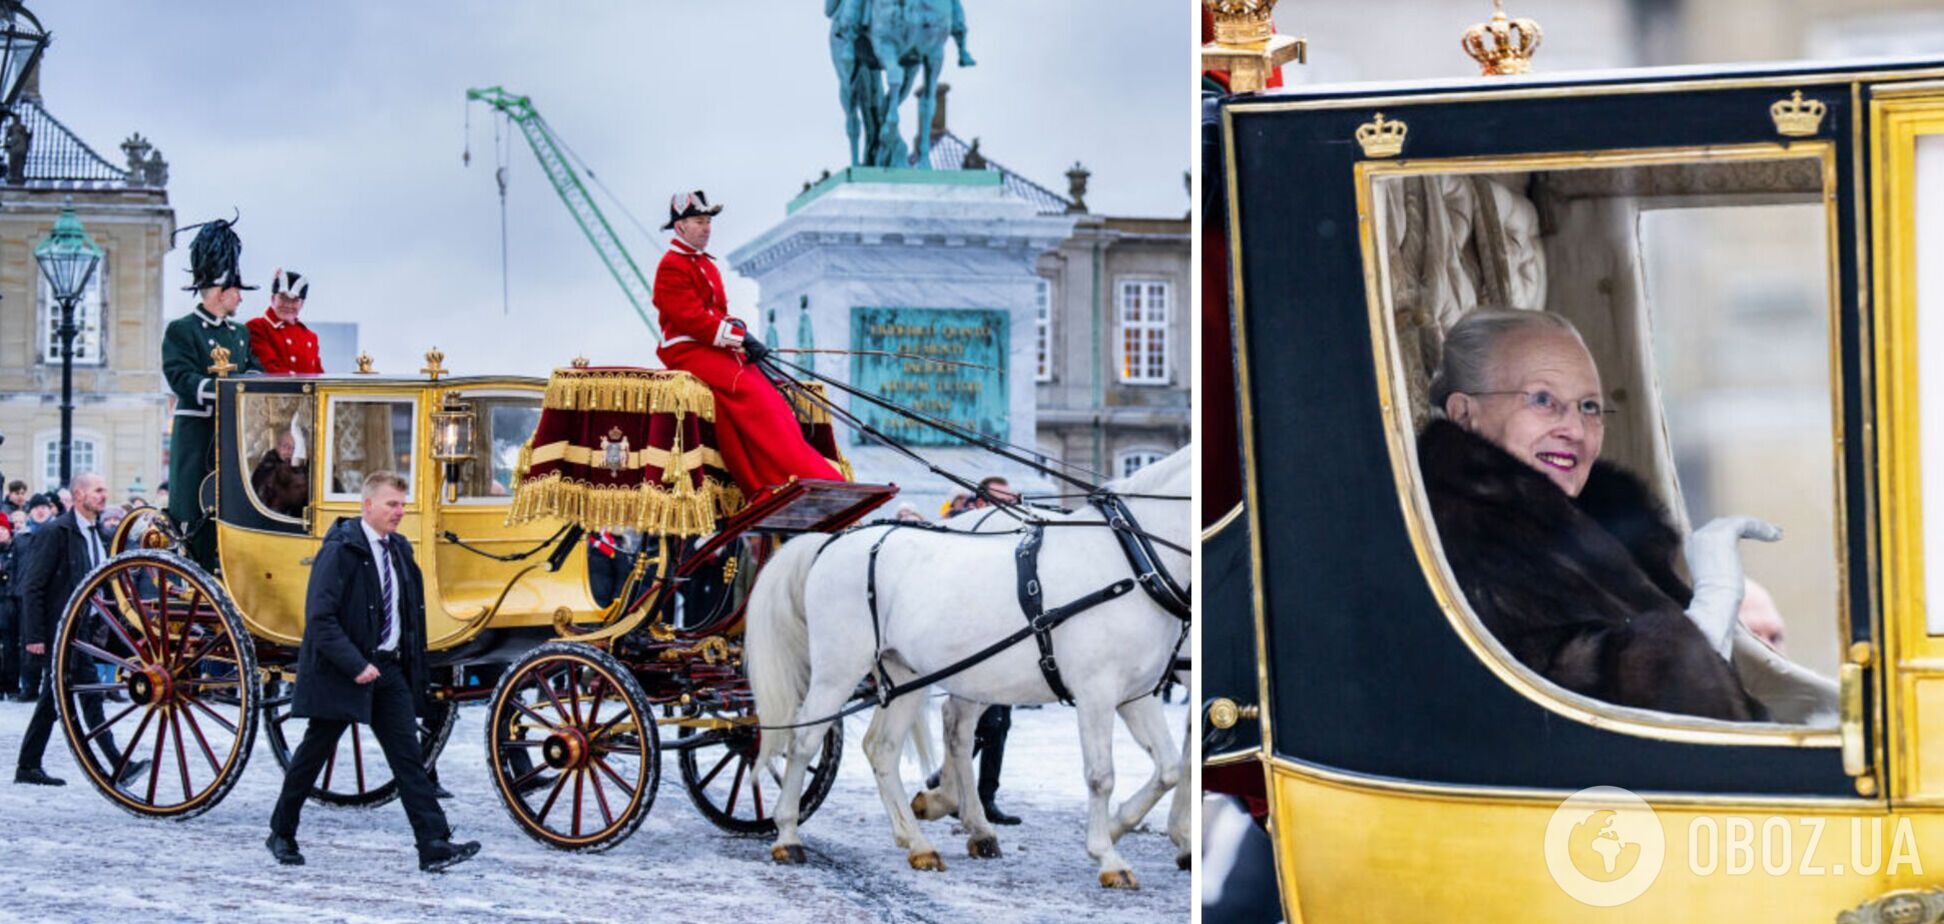 Золотая карета, шуба и бордовое платье с орденами: каково было последнее появление на публике 83-летней королевы Дании Маргрете II